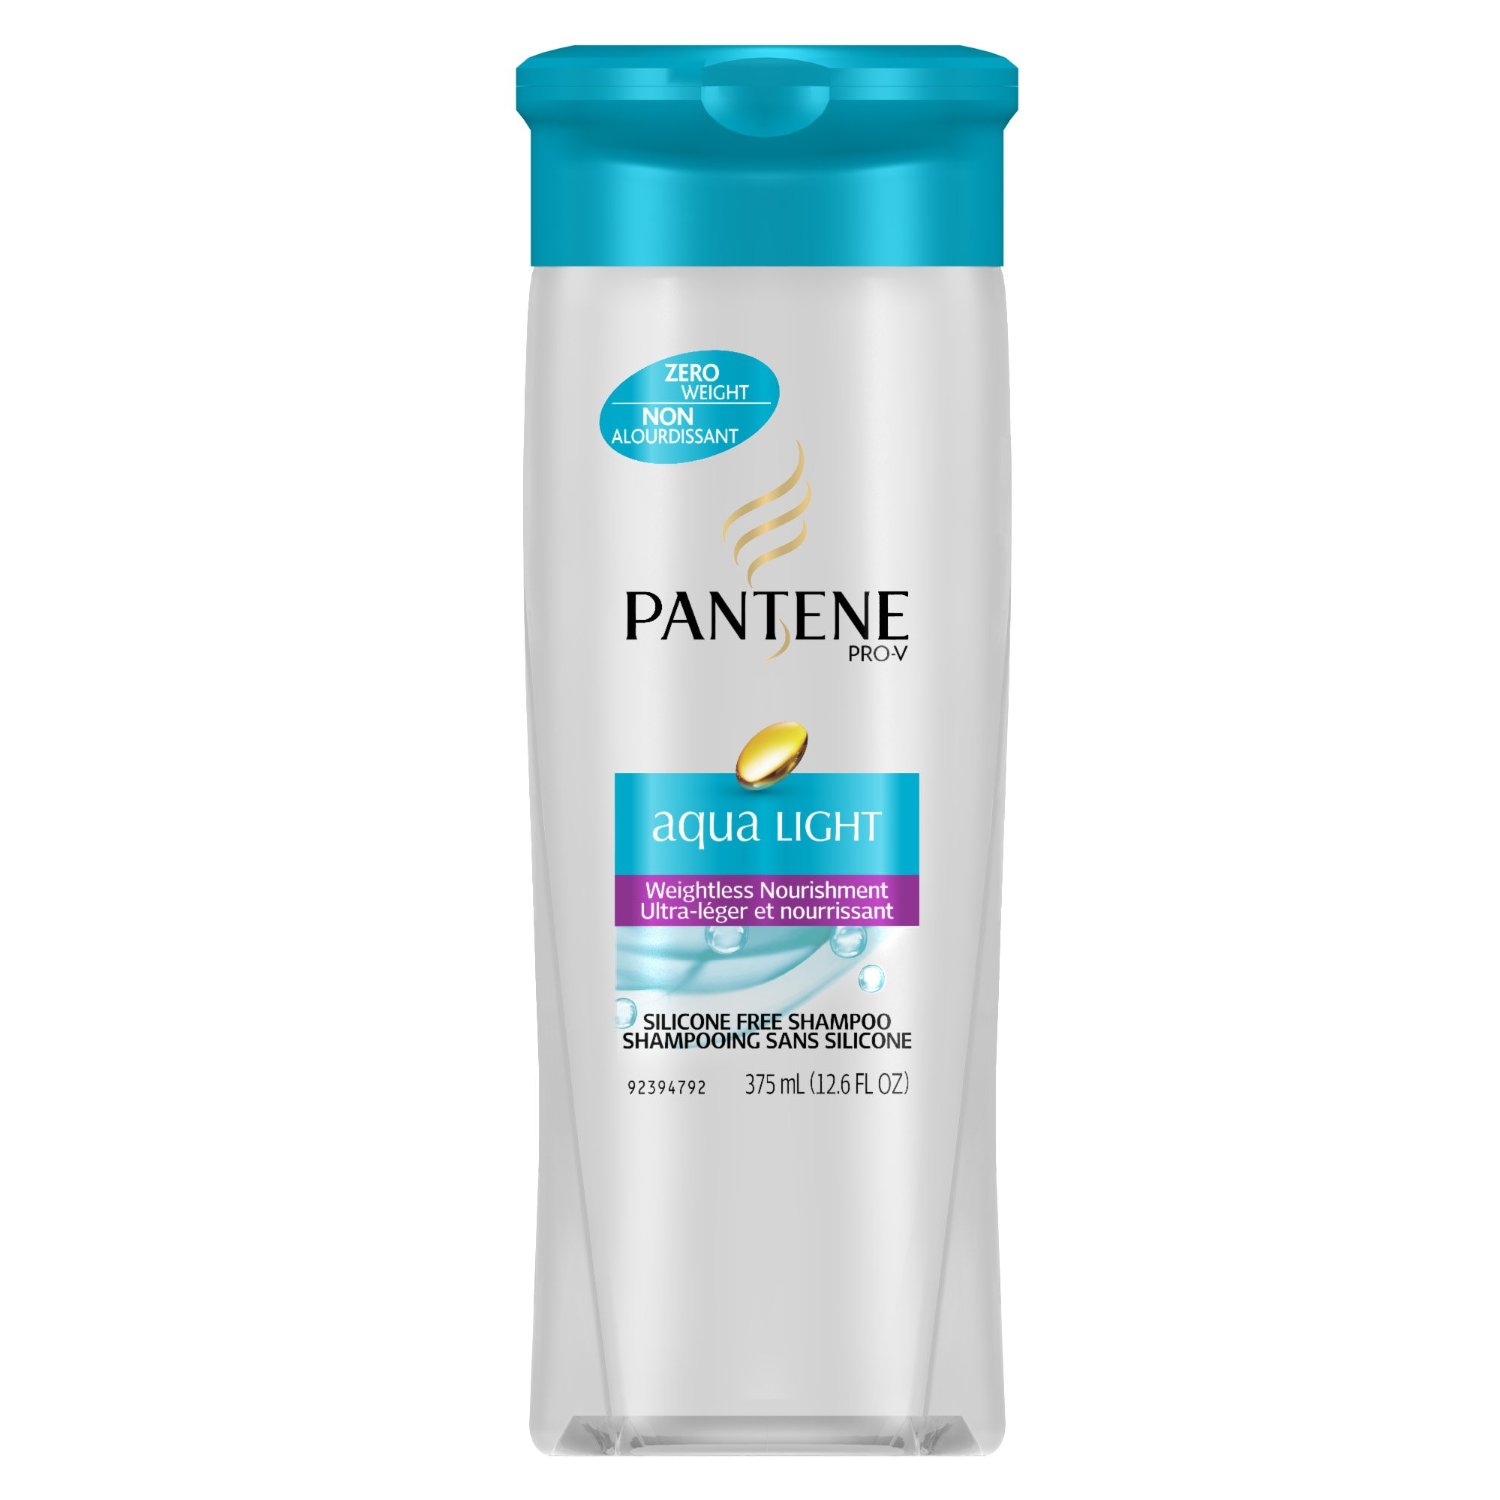 PANTENE Aqua Light Weightless Nourishment Shampoo, 12.6 Fluid Ounce (Pack of 2) $3.68